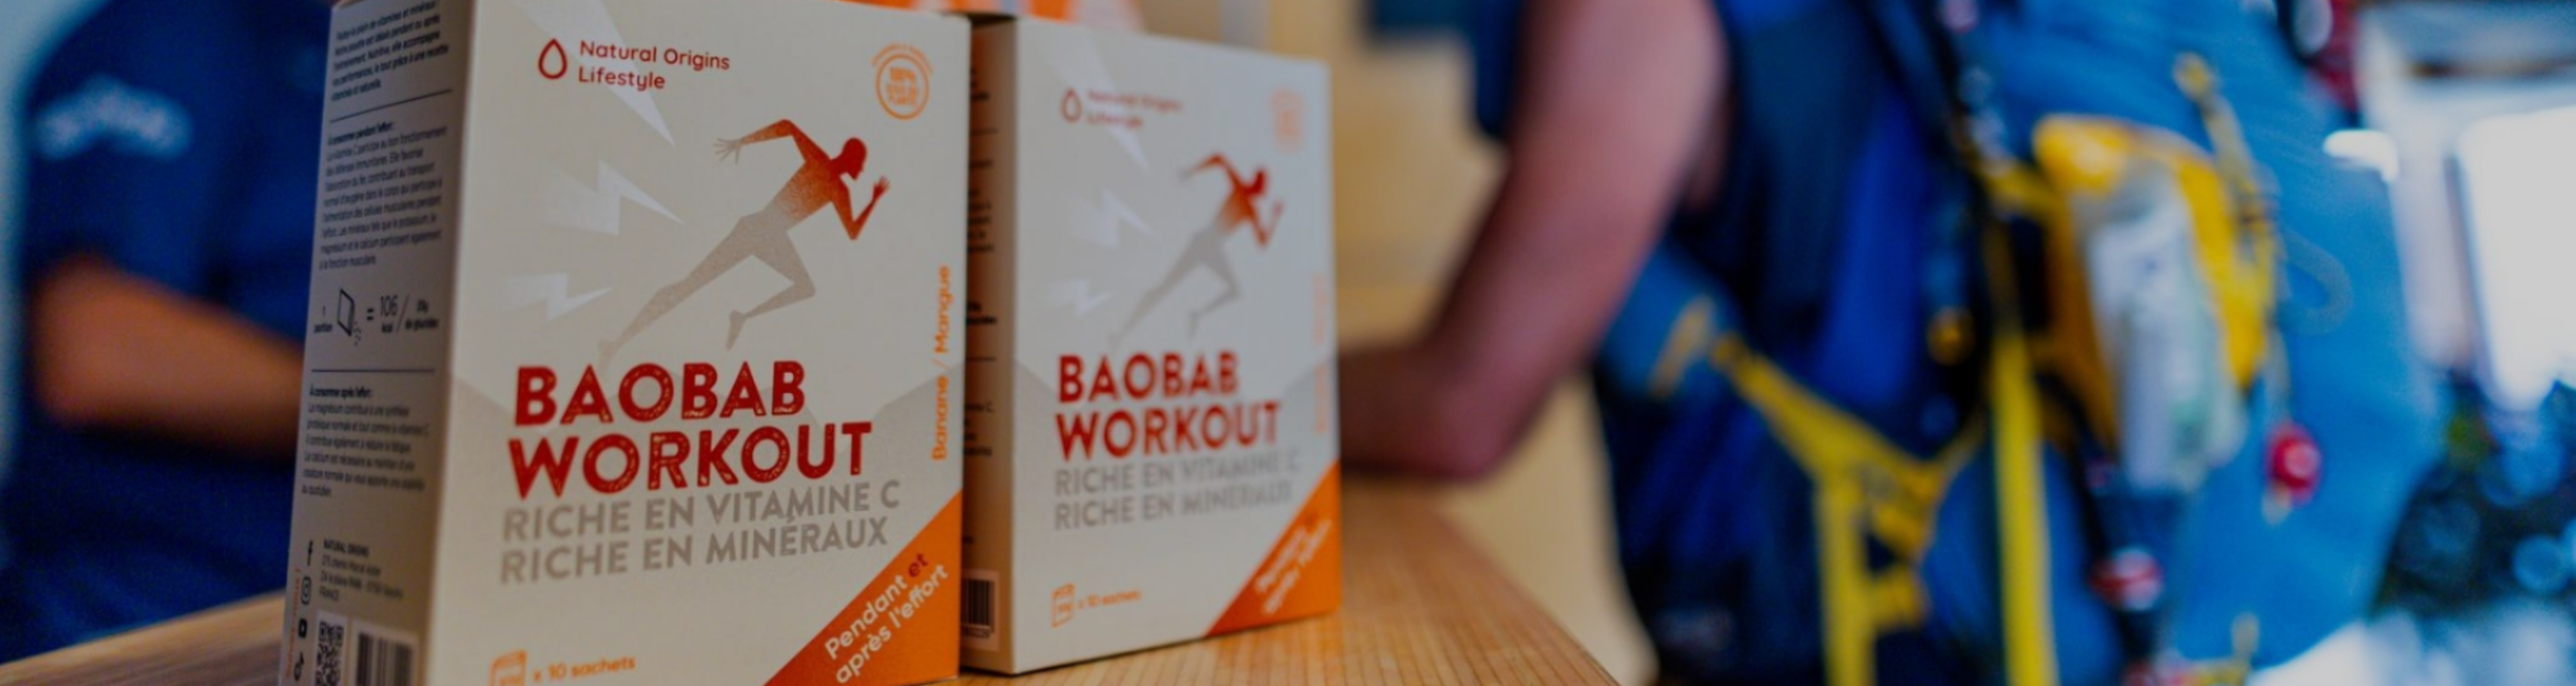 Nouveau format pour le Baobab Workout Natural Origins Lifestyle, l’allié des sportifs !